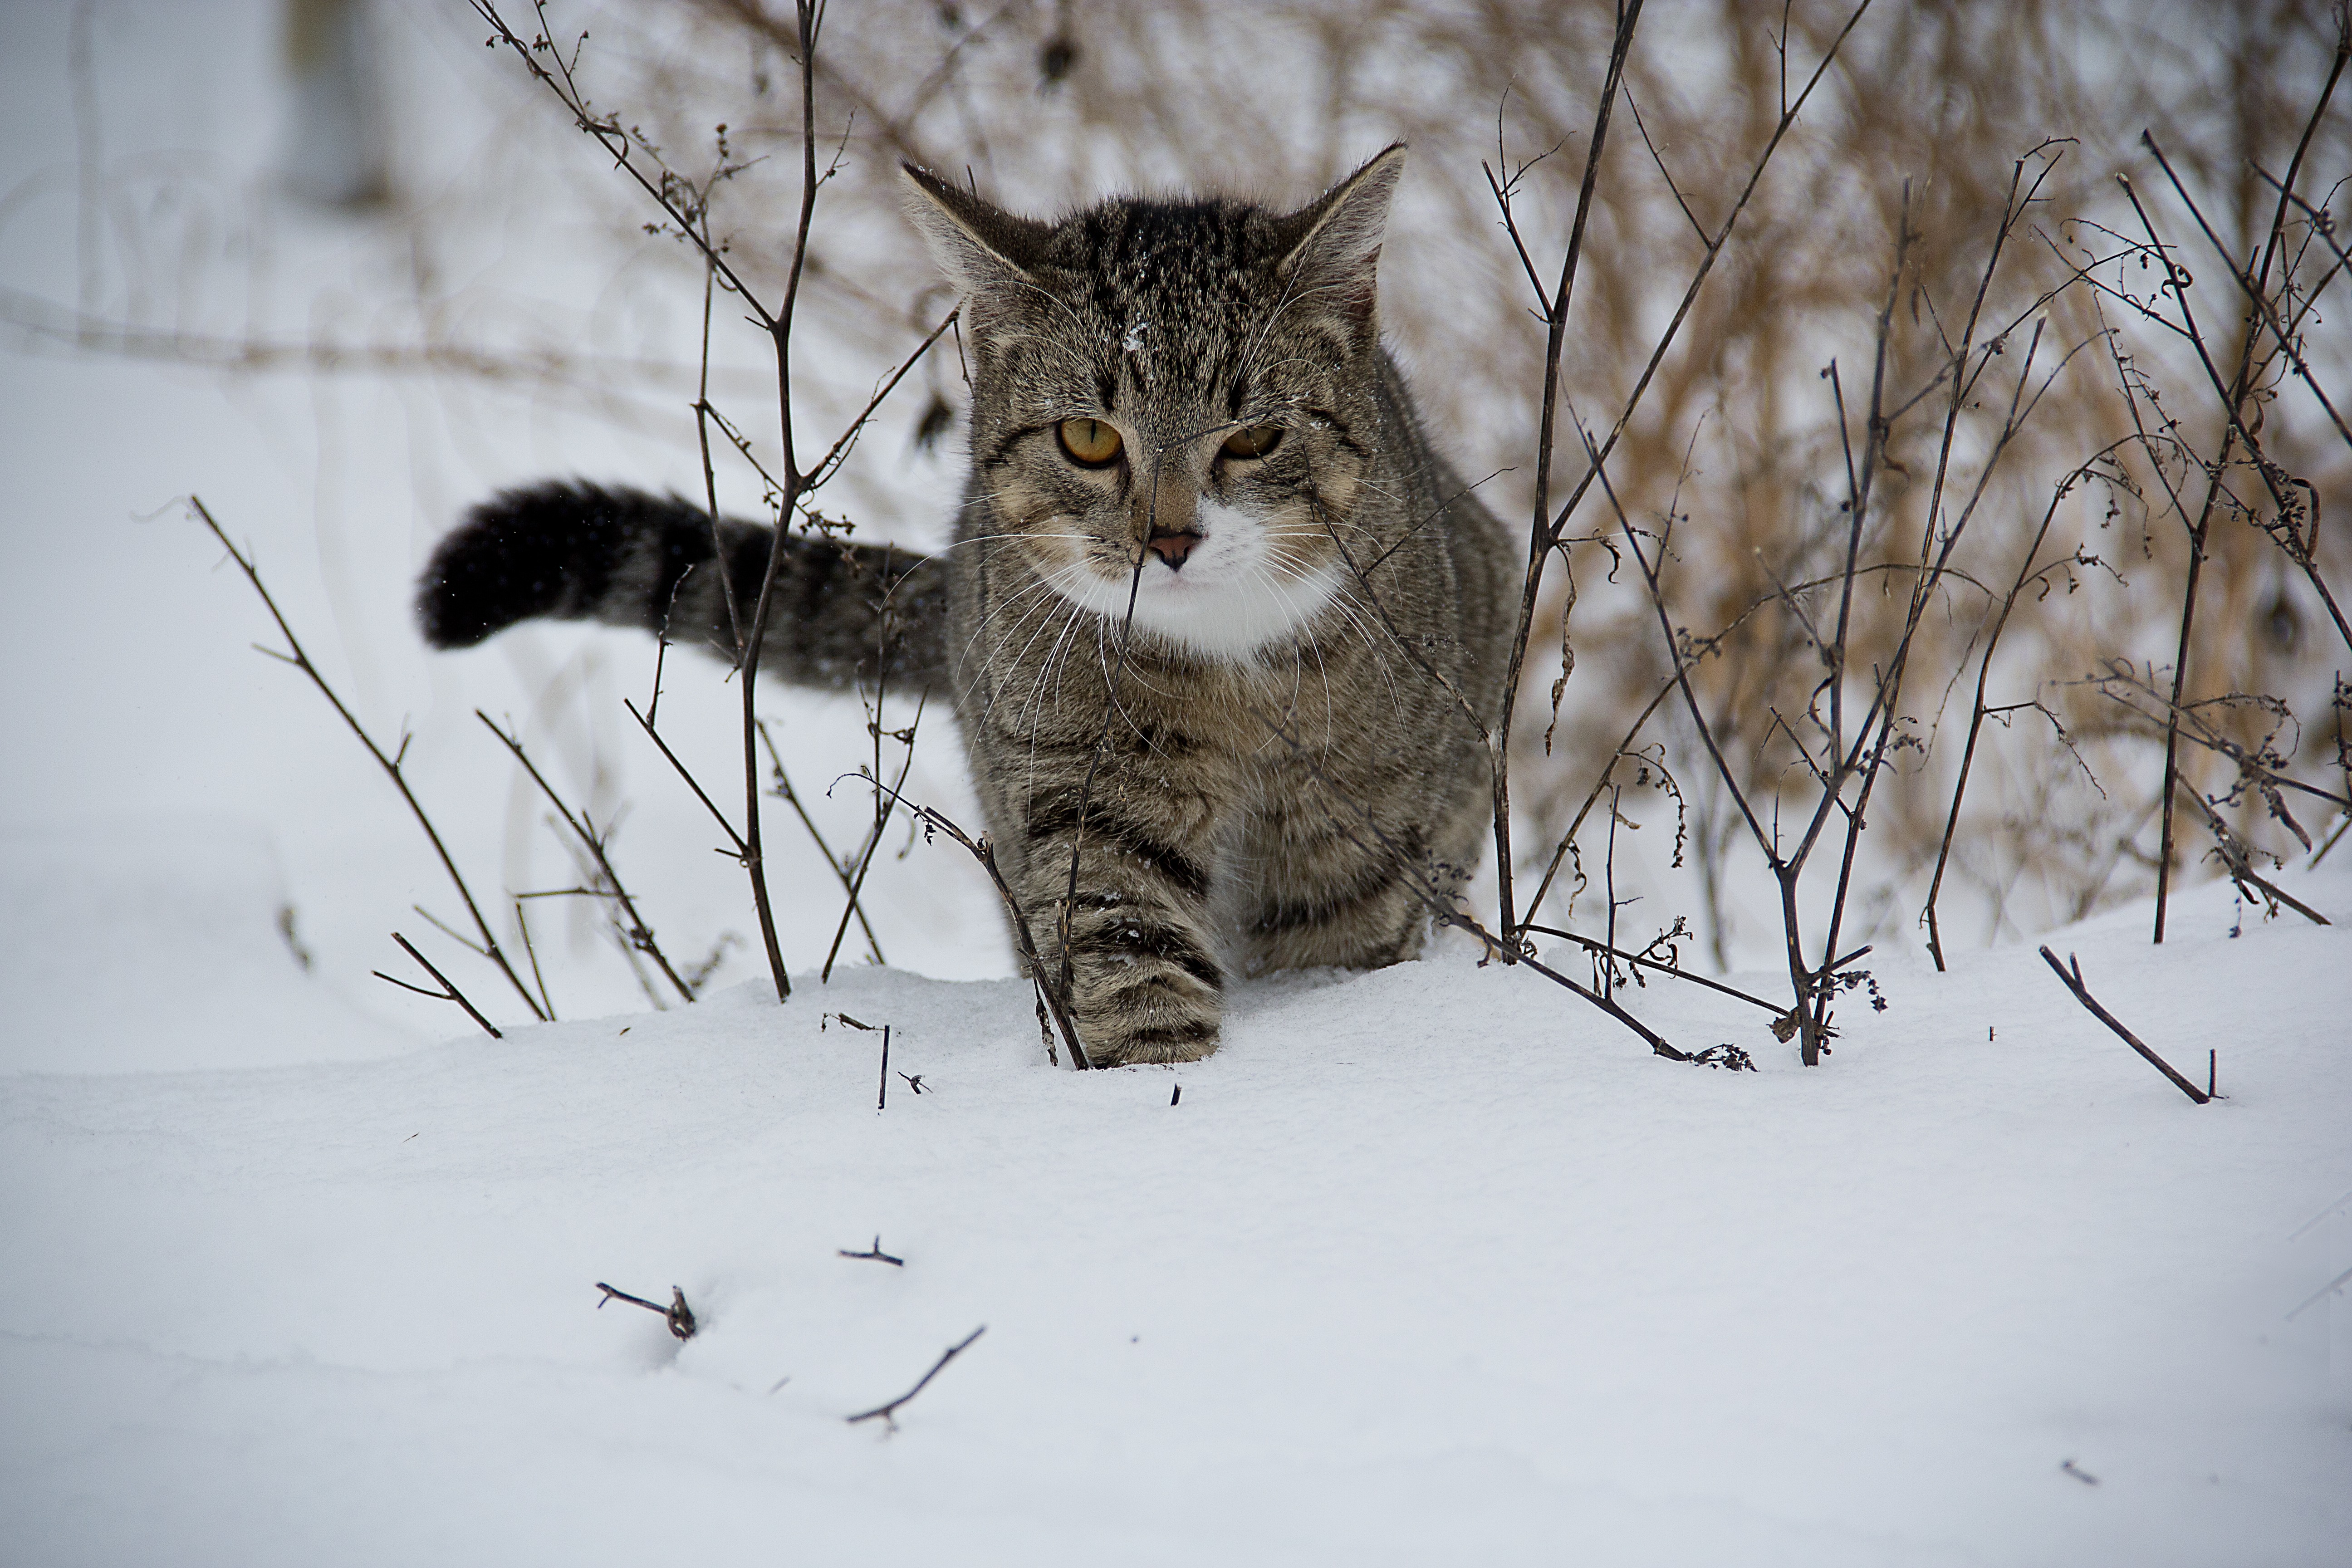 A cat wading through snowdrifts